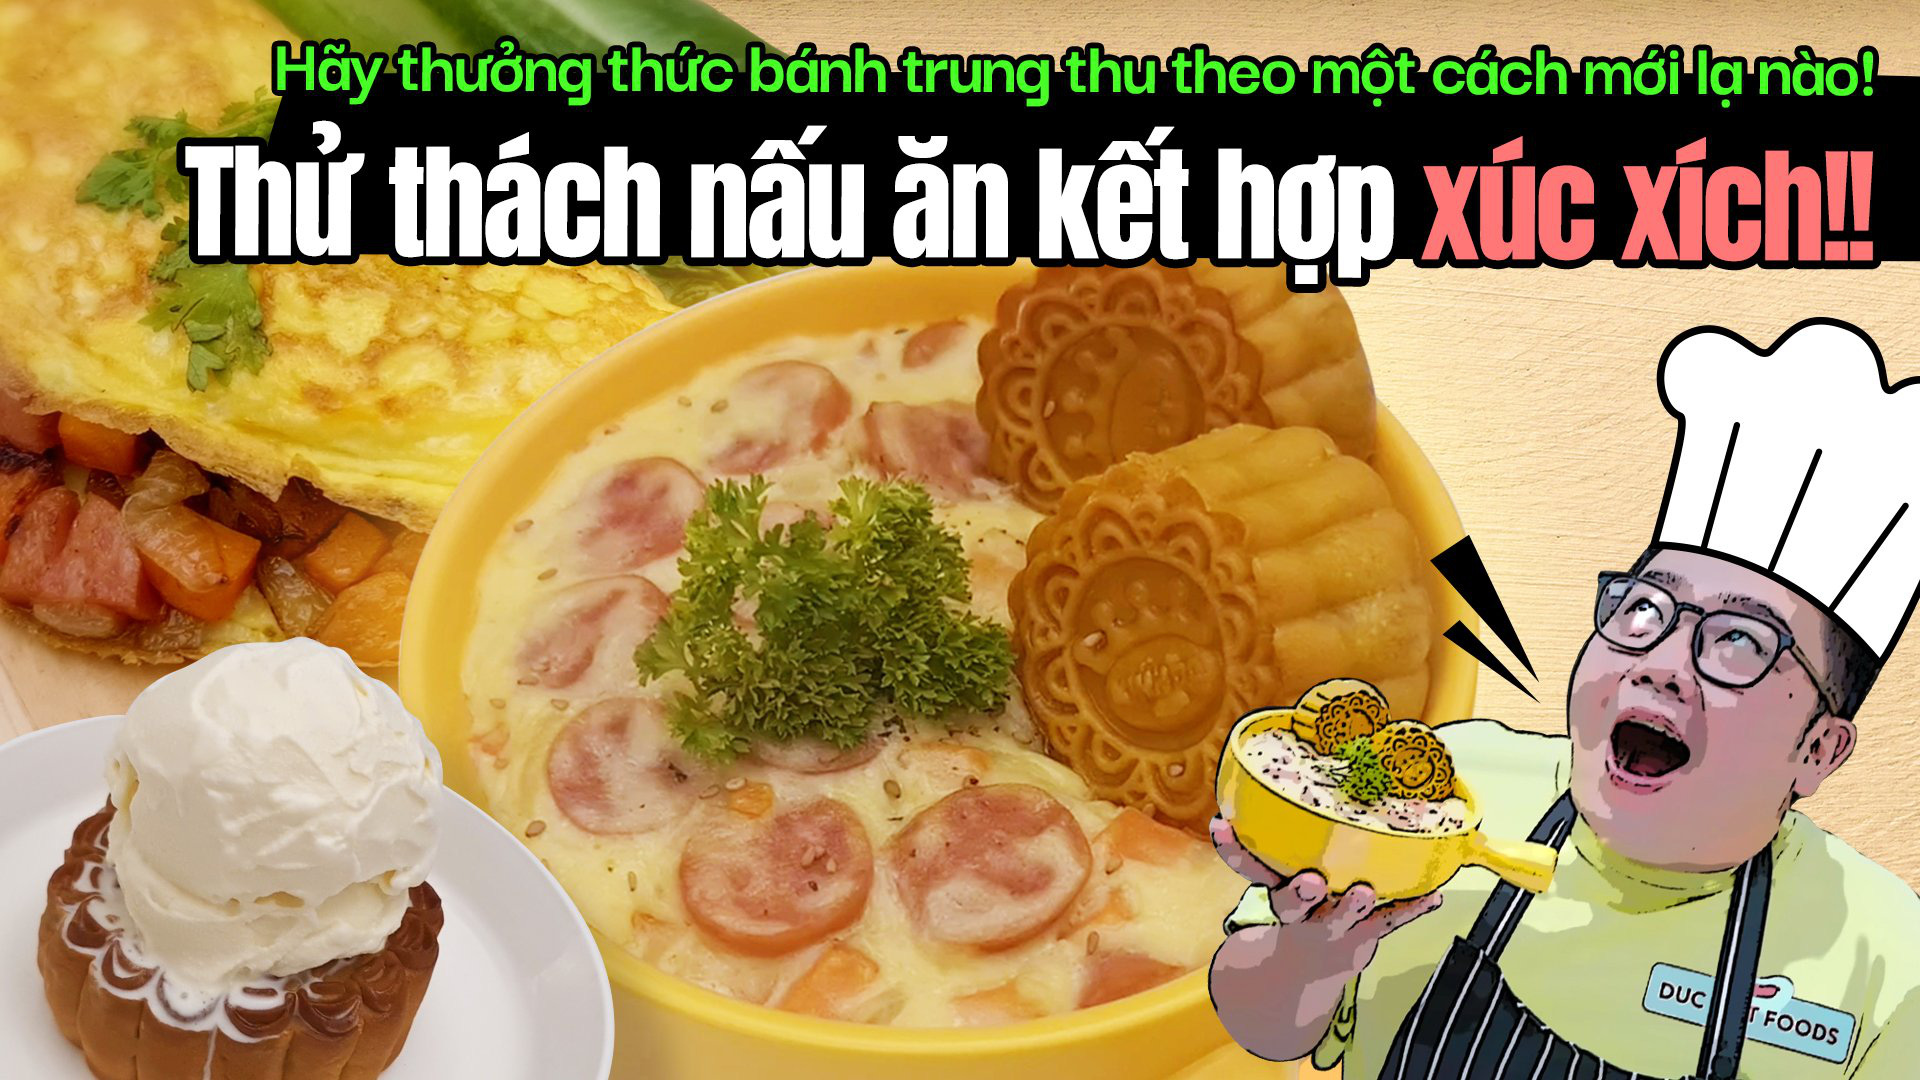 Bánh Trung thu chấm kem xúc xích Đức Việt của Youtuber Gấu To là “hot trend” hay thảm họa? - Ảnh 1.